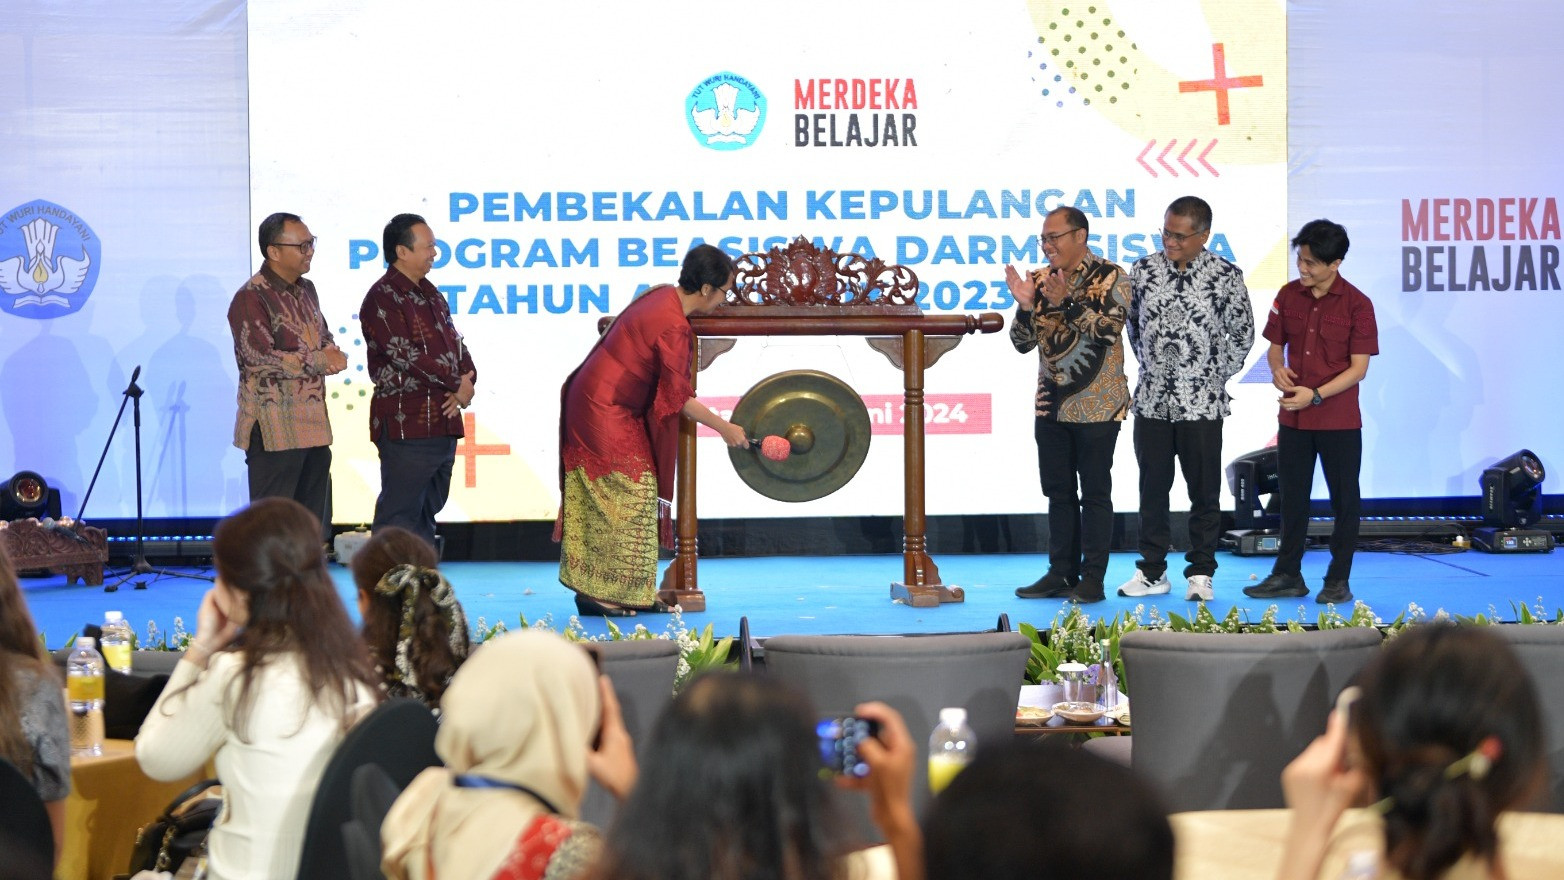 Kemendikbudristek melalui Balai Pembiayaan Pendidikan Tinggi (BPPT), Puslapdik menyelenggarakan Pembekalan Kepulangan Program Beasiswa Darmasiswa RI Tahun Akademik 2023/2024 di Jakarta, Kamis (27/6).